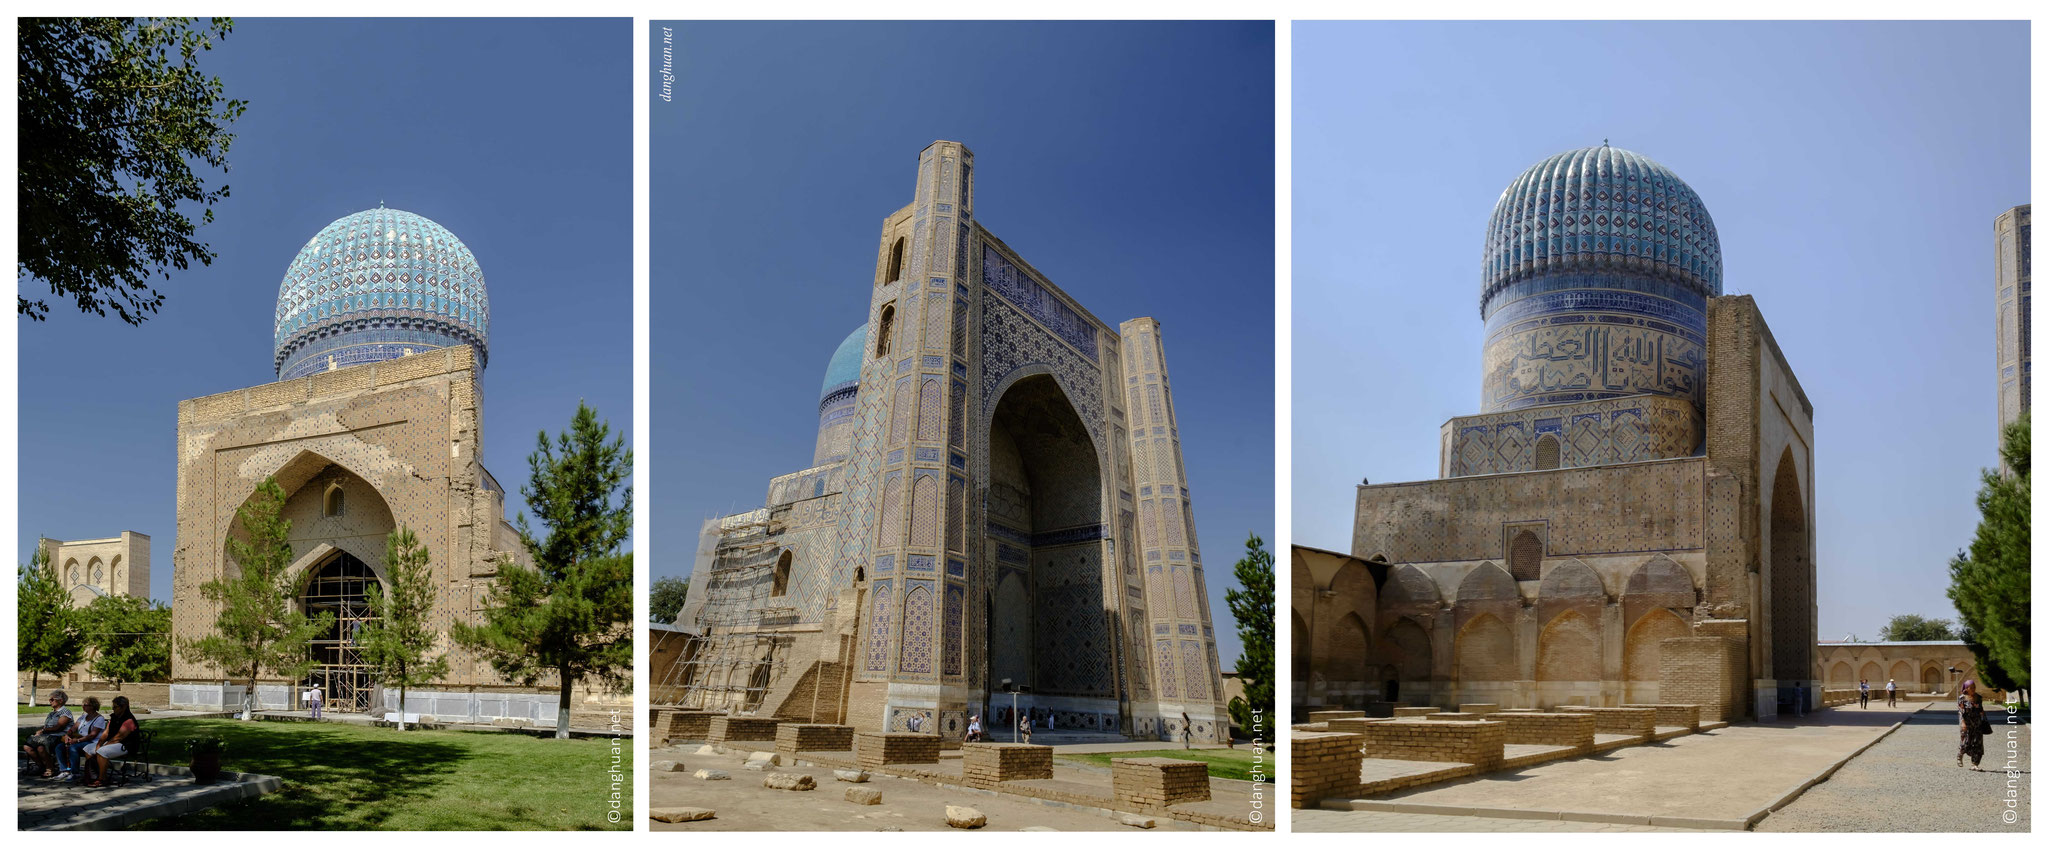 la Mosquée Bibi-Khanym a servi seulement 20 ans puis est abandonnée car trop grande et construite trop vite